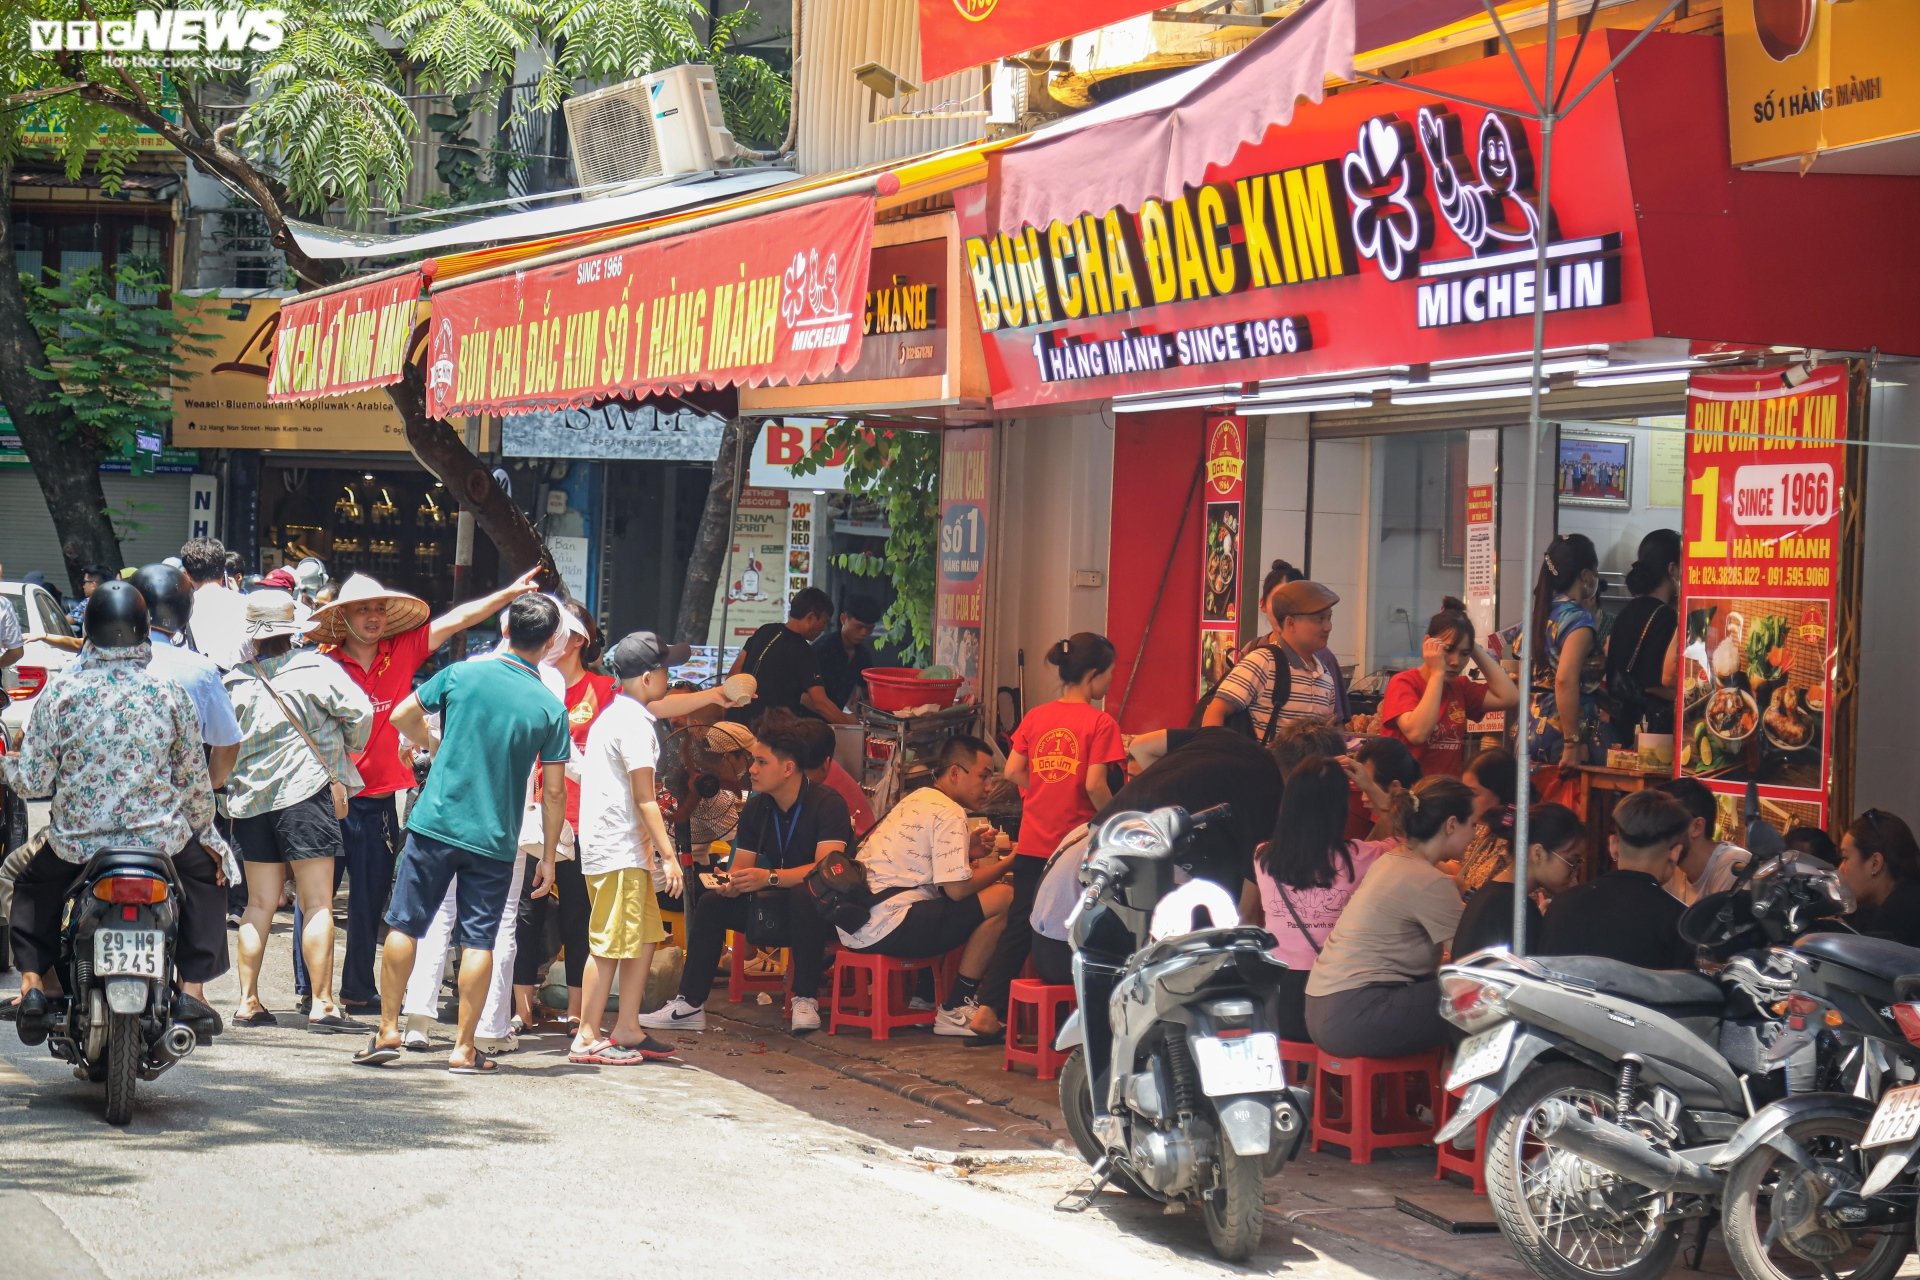 Hàng quán vỉa hè phố cổ Hà Nội chật kín khách dịp nghỉ lễ Quốc khánh - Ảnh 5.